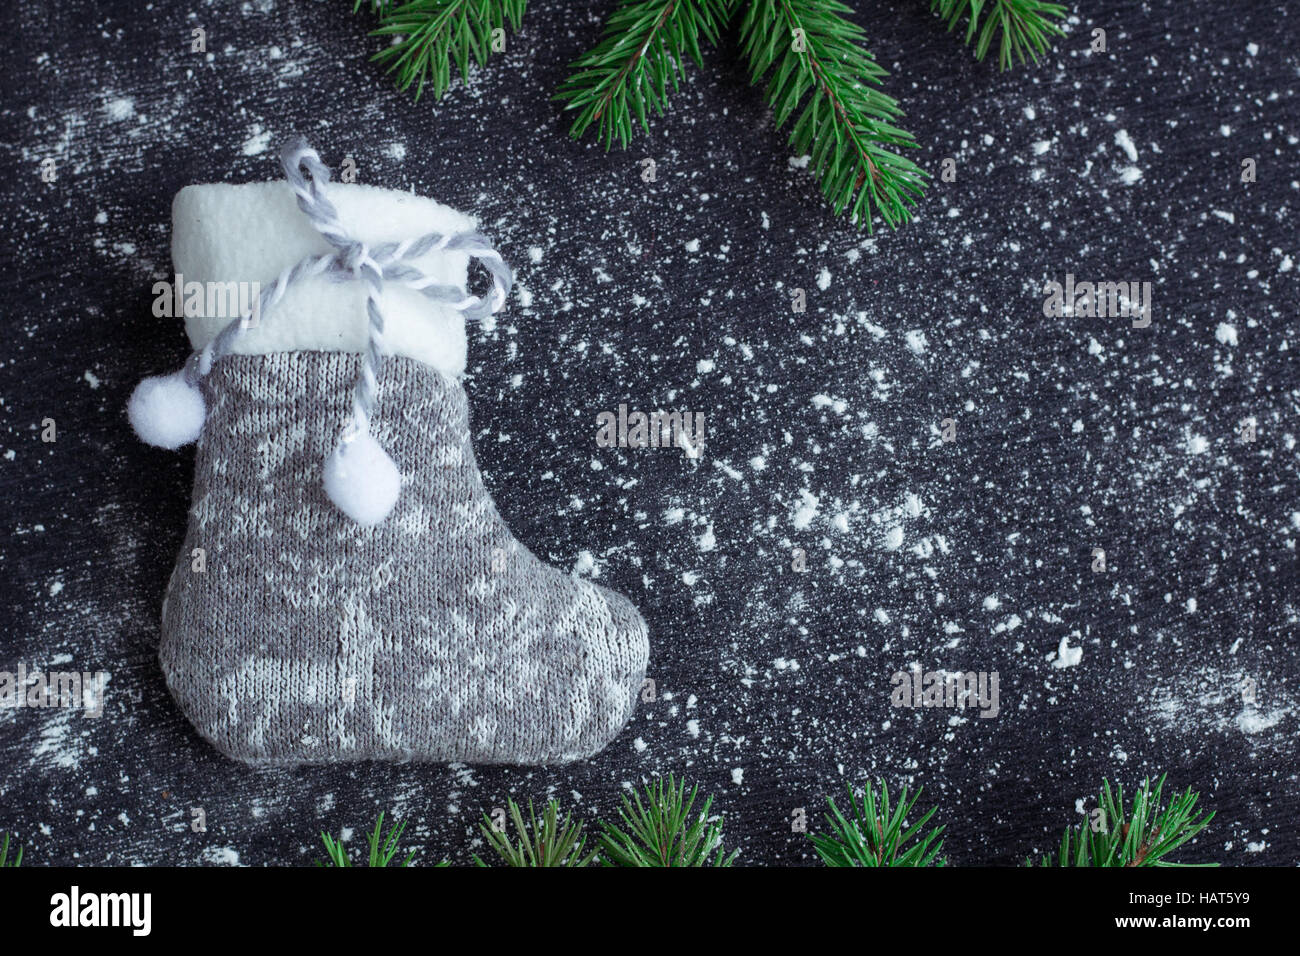 Weihnachten und Neujahr Winter Urlaub snowbound Zusammensetzung der graue Strumpf auf schwarzen Raum Hintergrund mit grünen Tannenzweigen Baum Stockfoto